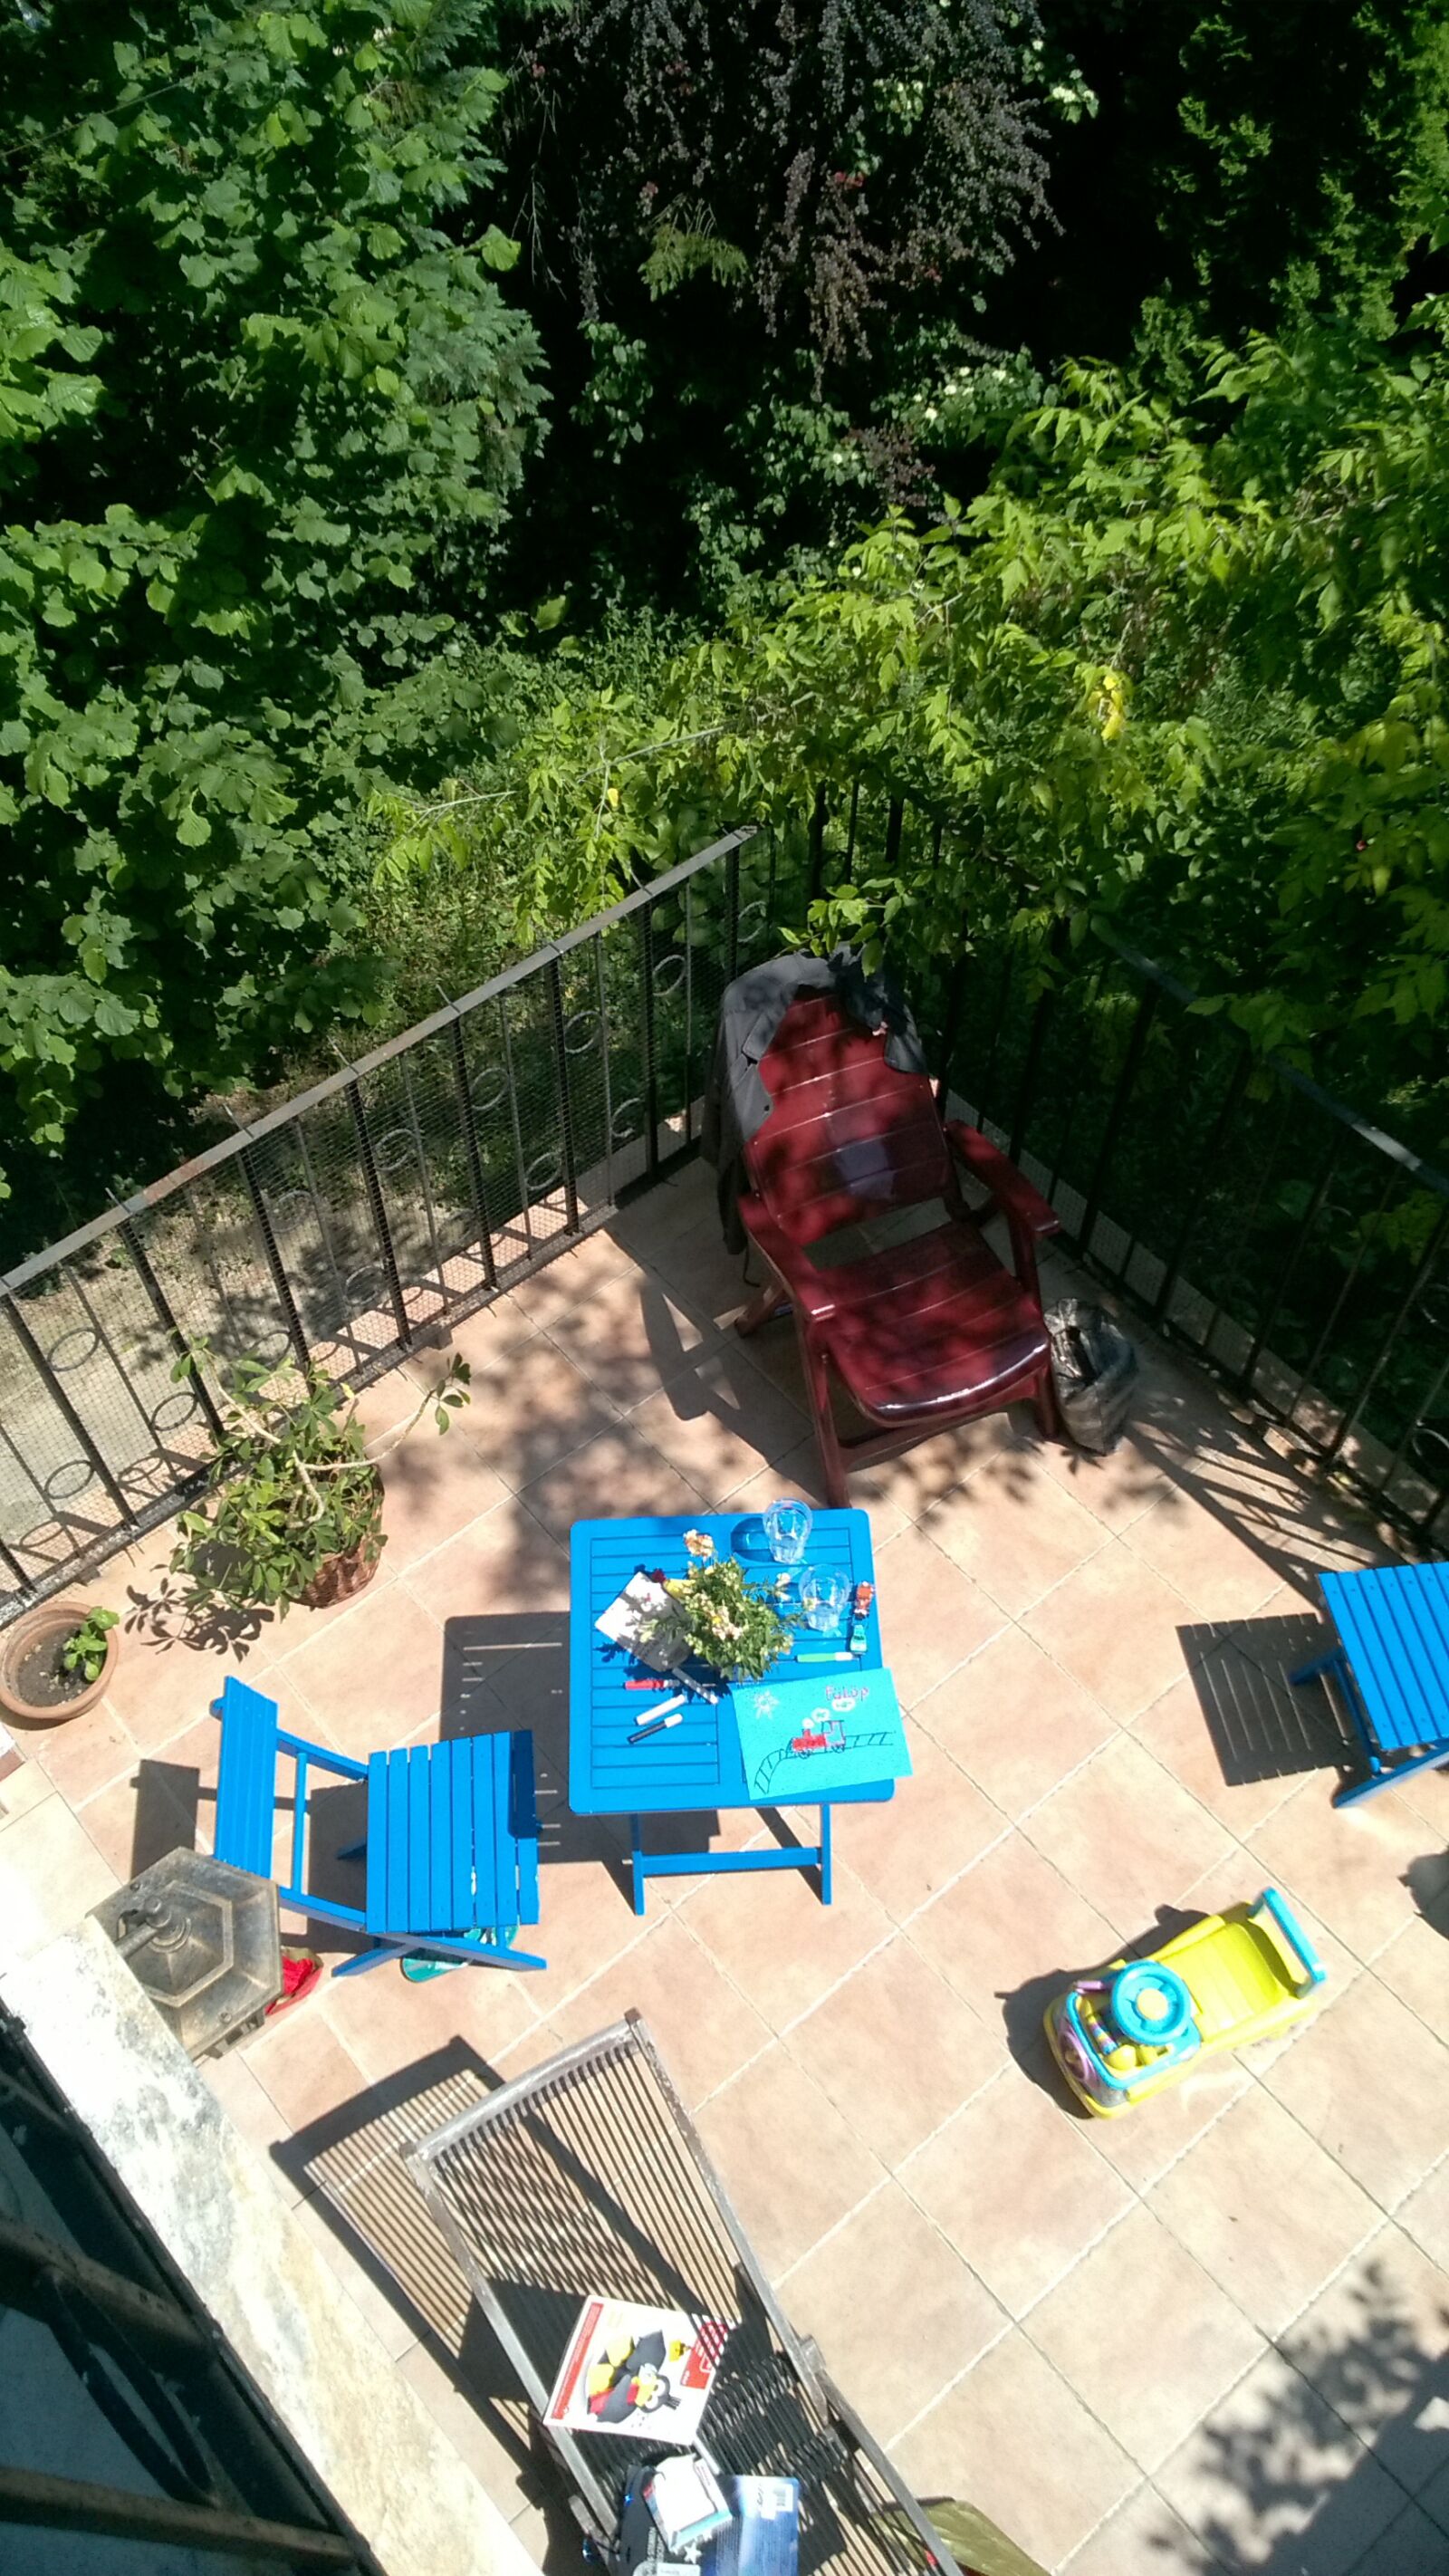 Nokia Lumia 735 sample photo. Terrace, garden, summer photography